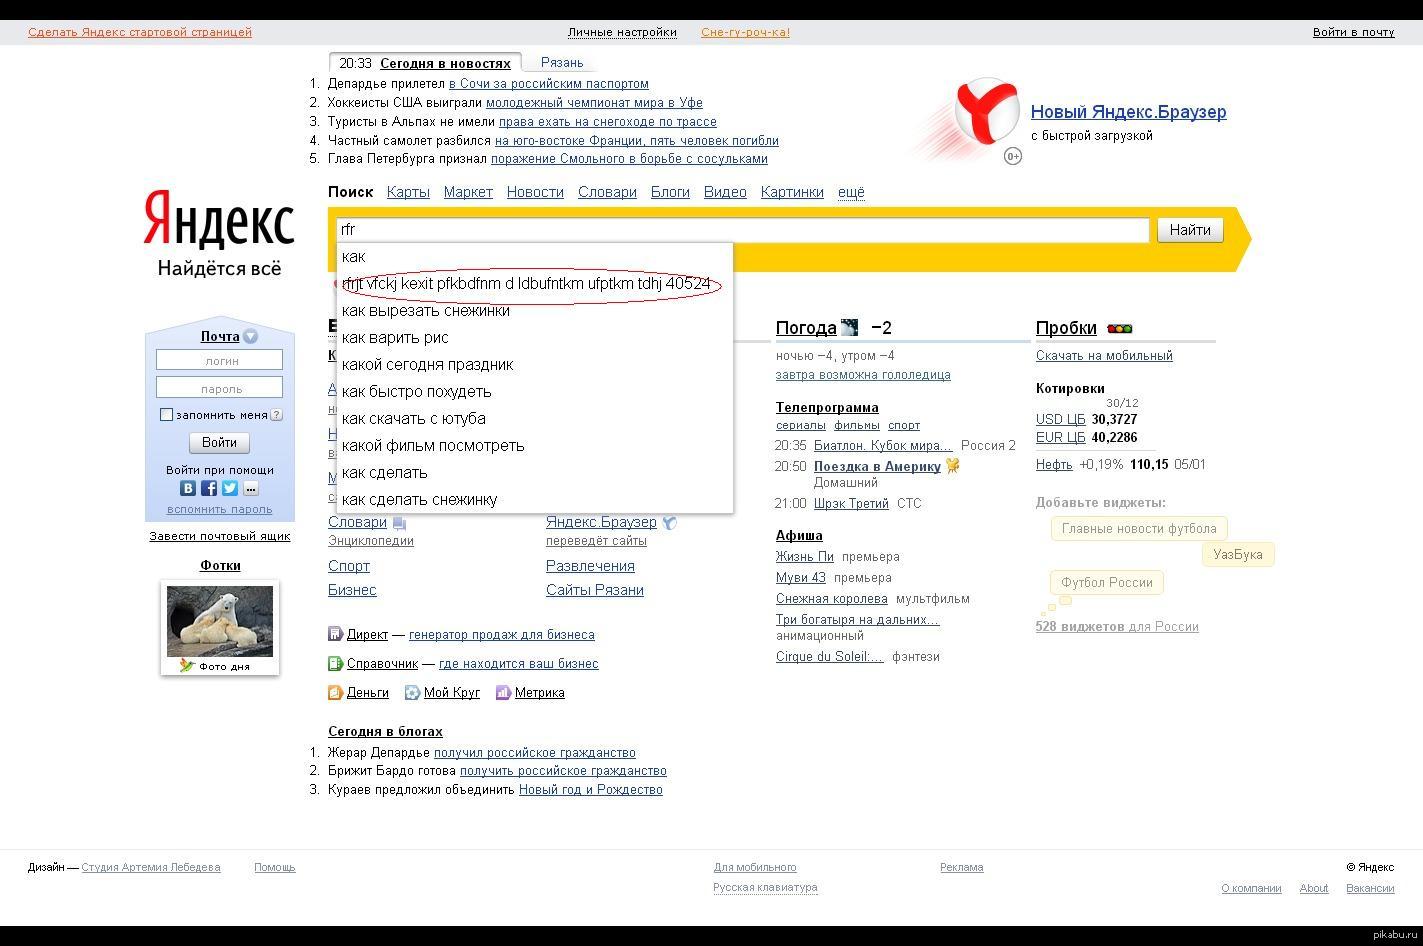 Как сделать чтобы Яндекс не нашел фото